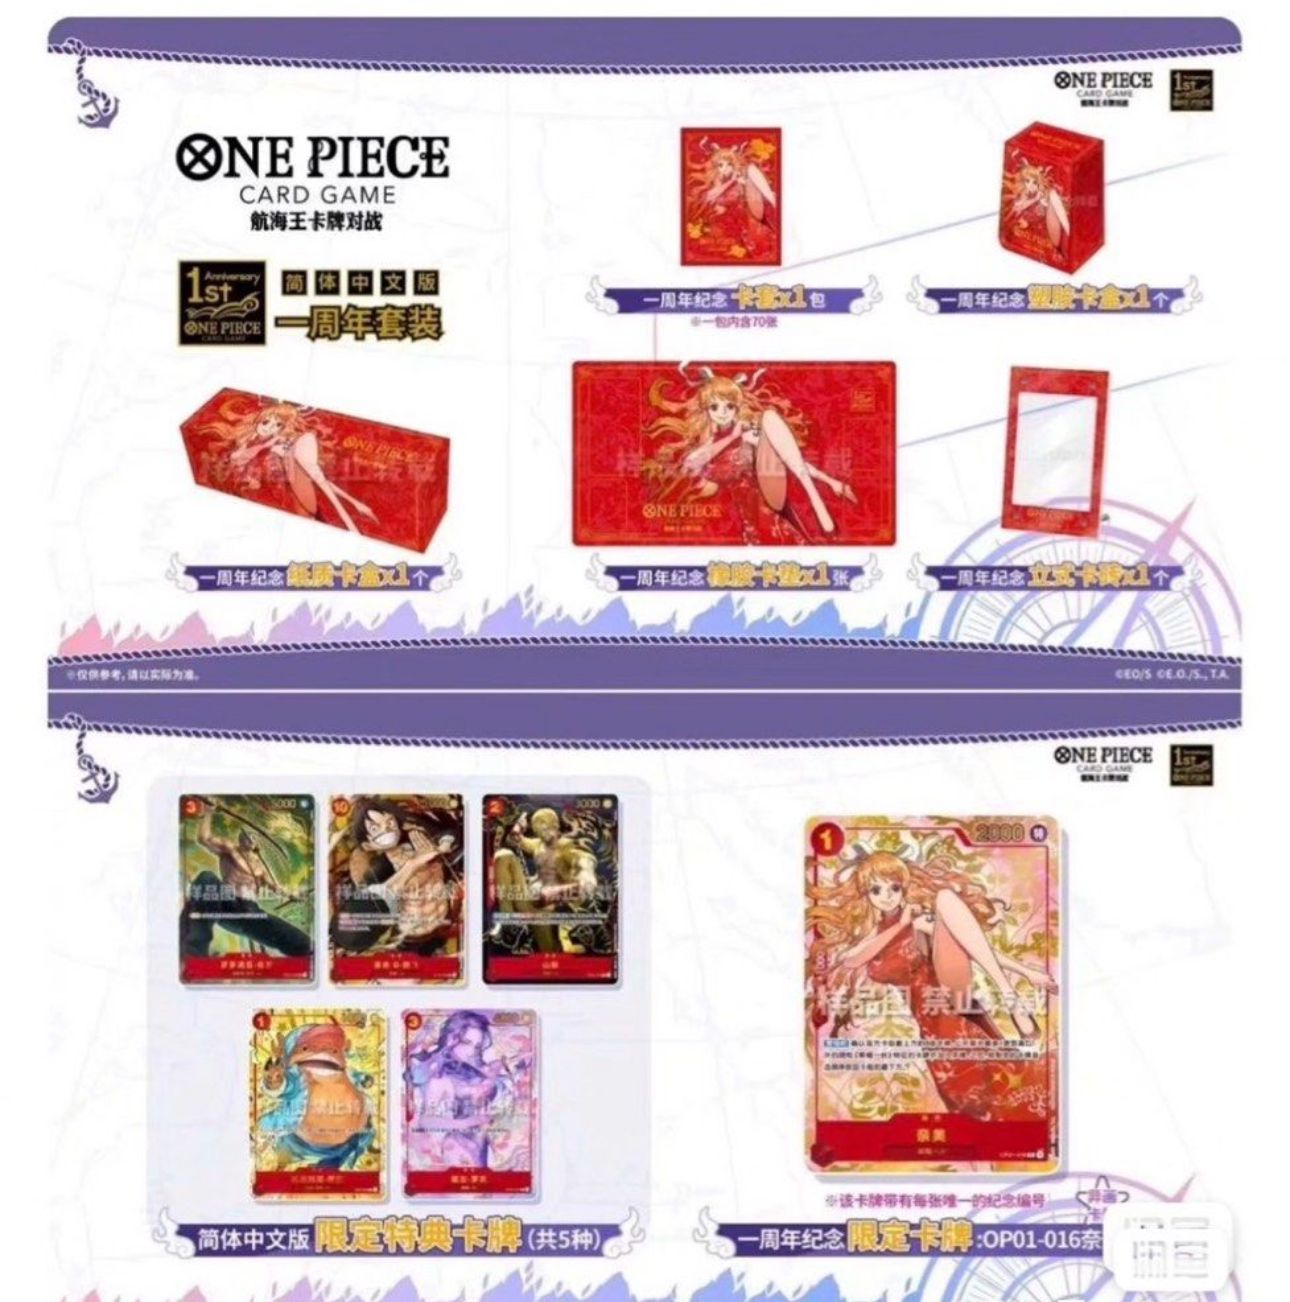 簡體中文版一週年紀念套裝 奈美 One Piece Card Nami